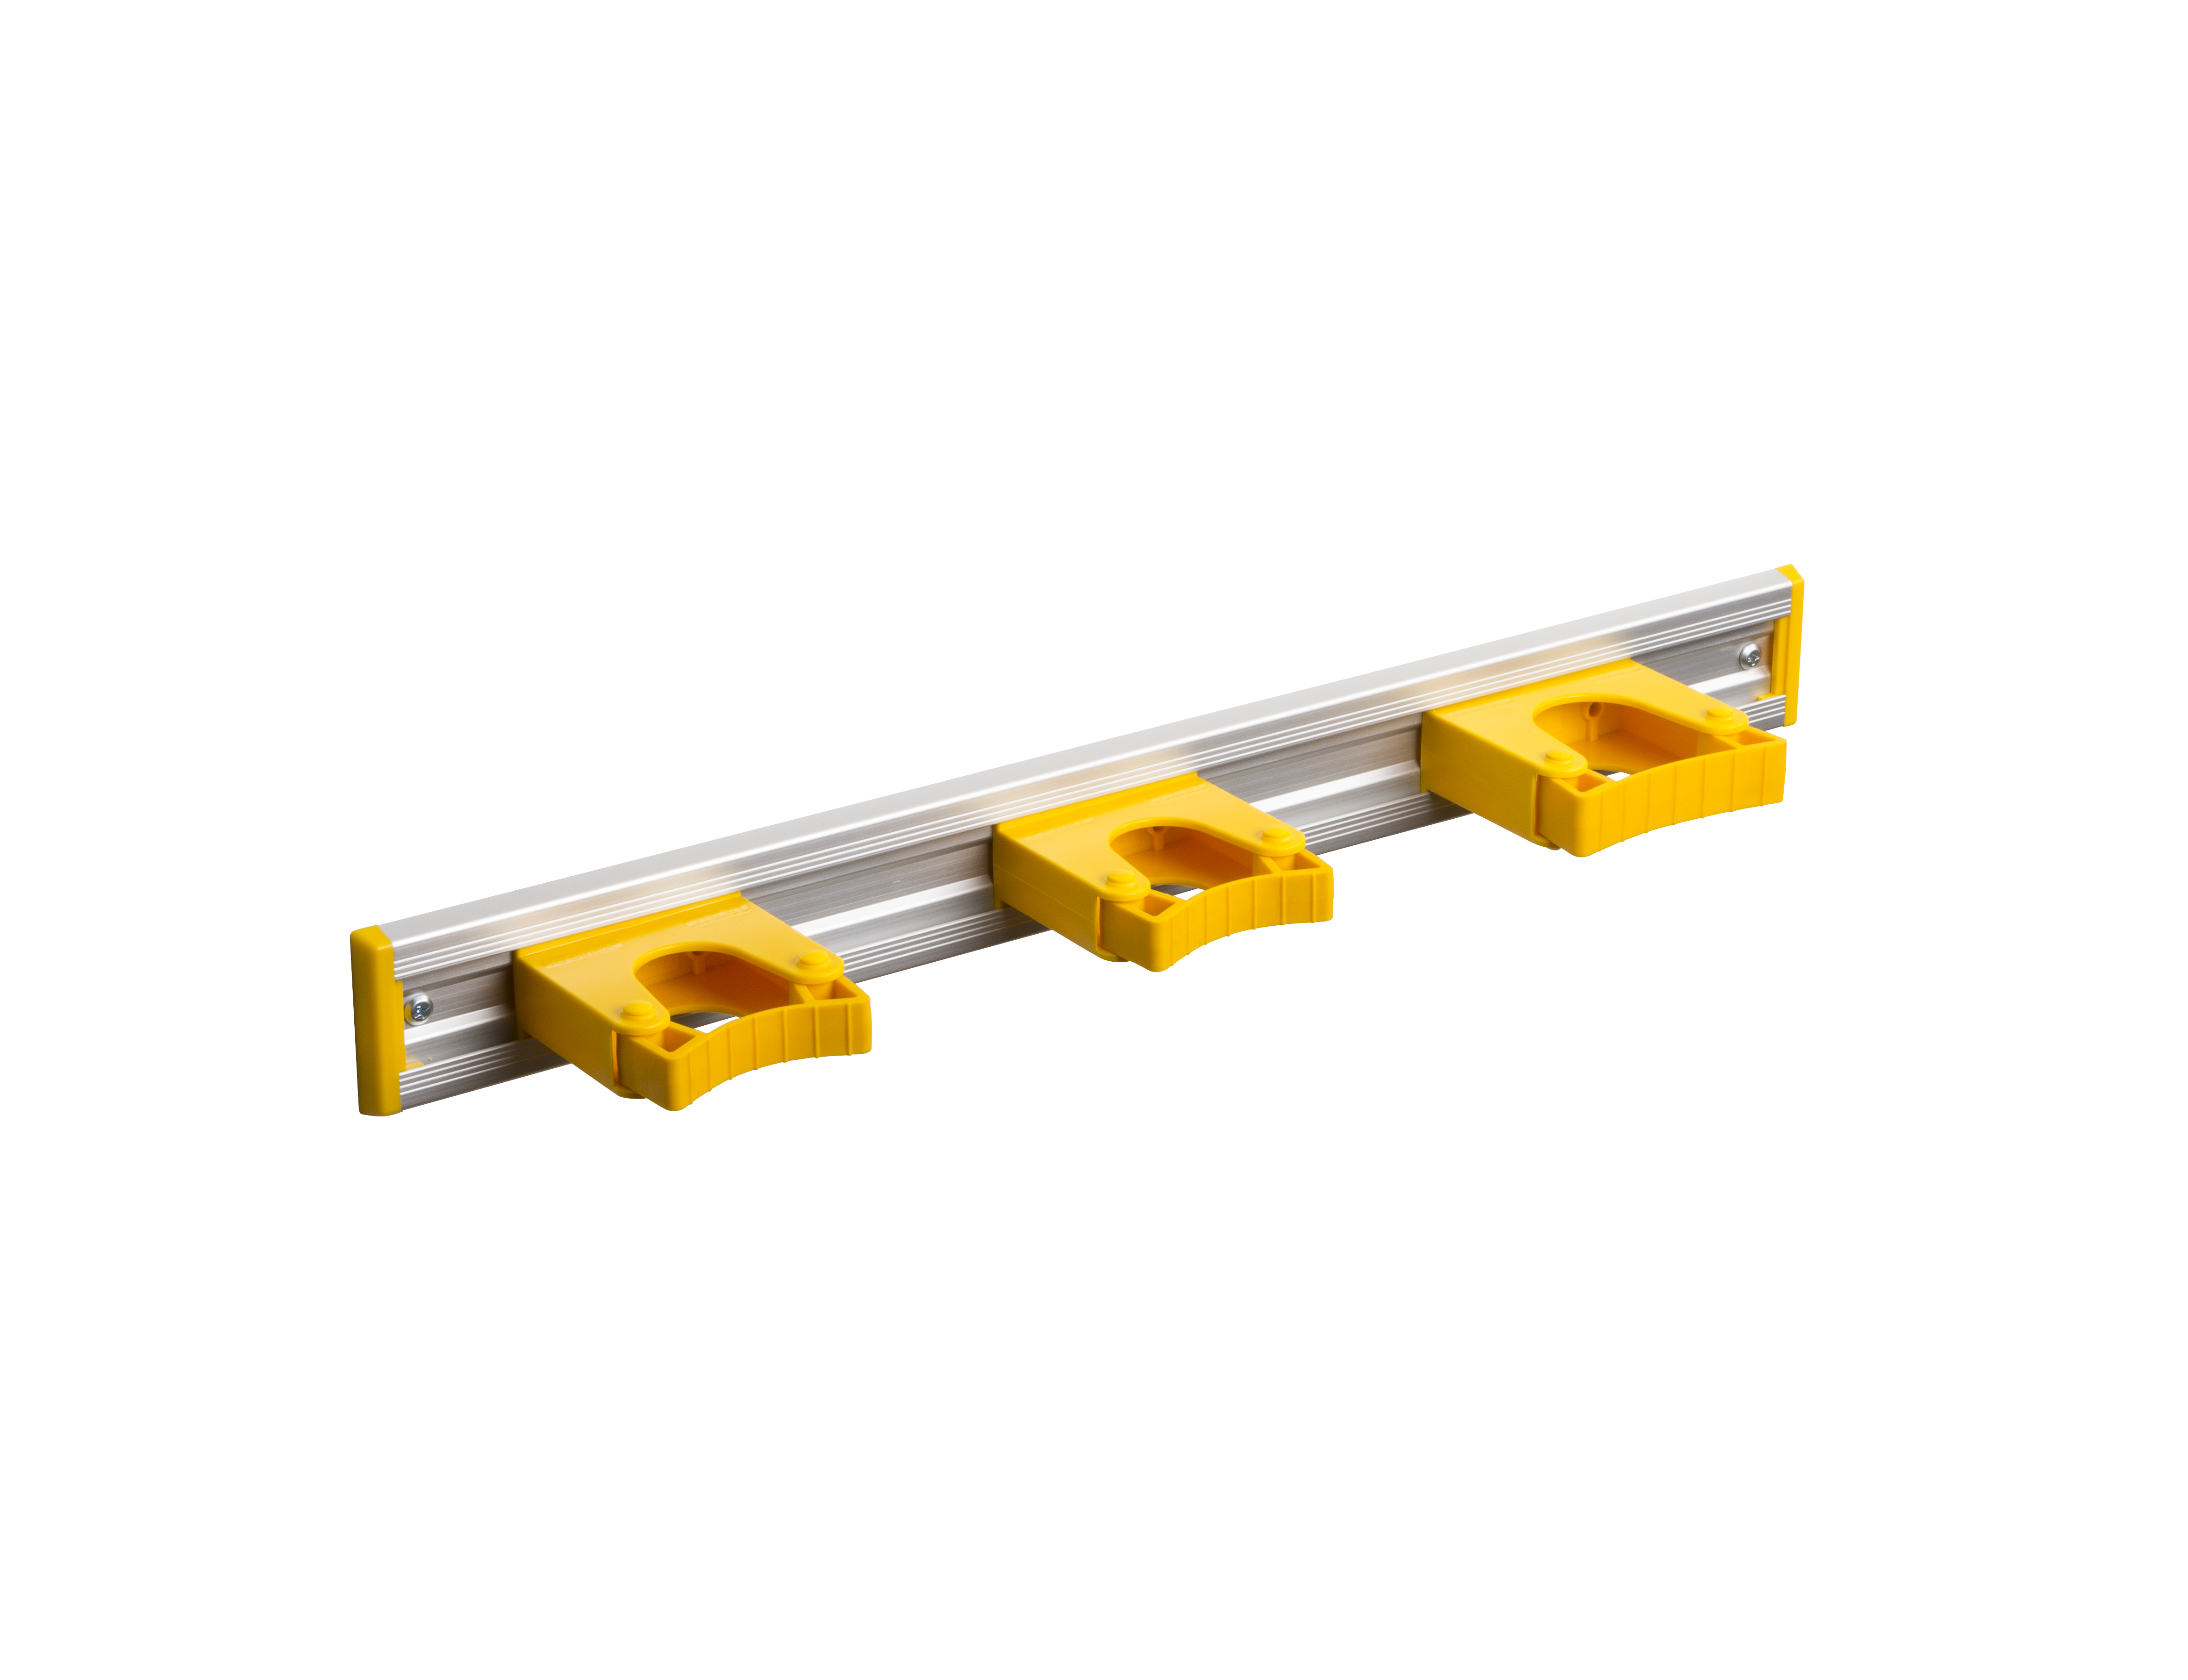 Toolflex Alu-Schiene 50 cm mit gelben Endstücken, bestückt mit 3 gelben Haltern (2 x 20-30 mm, 1 x 30-40 mm)